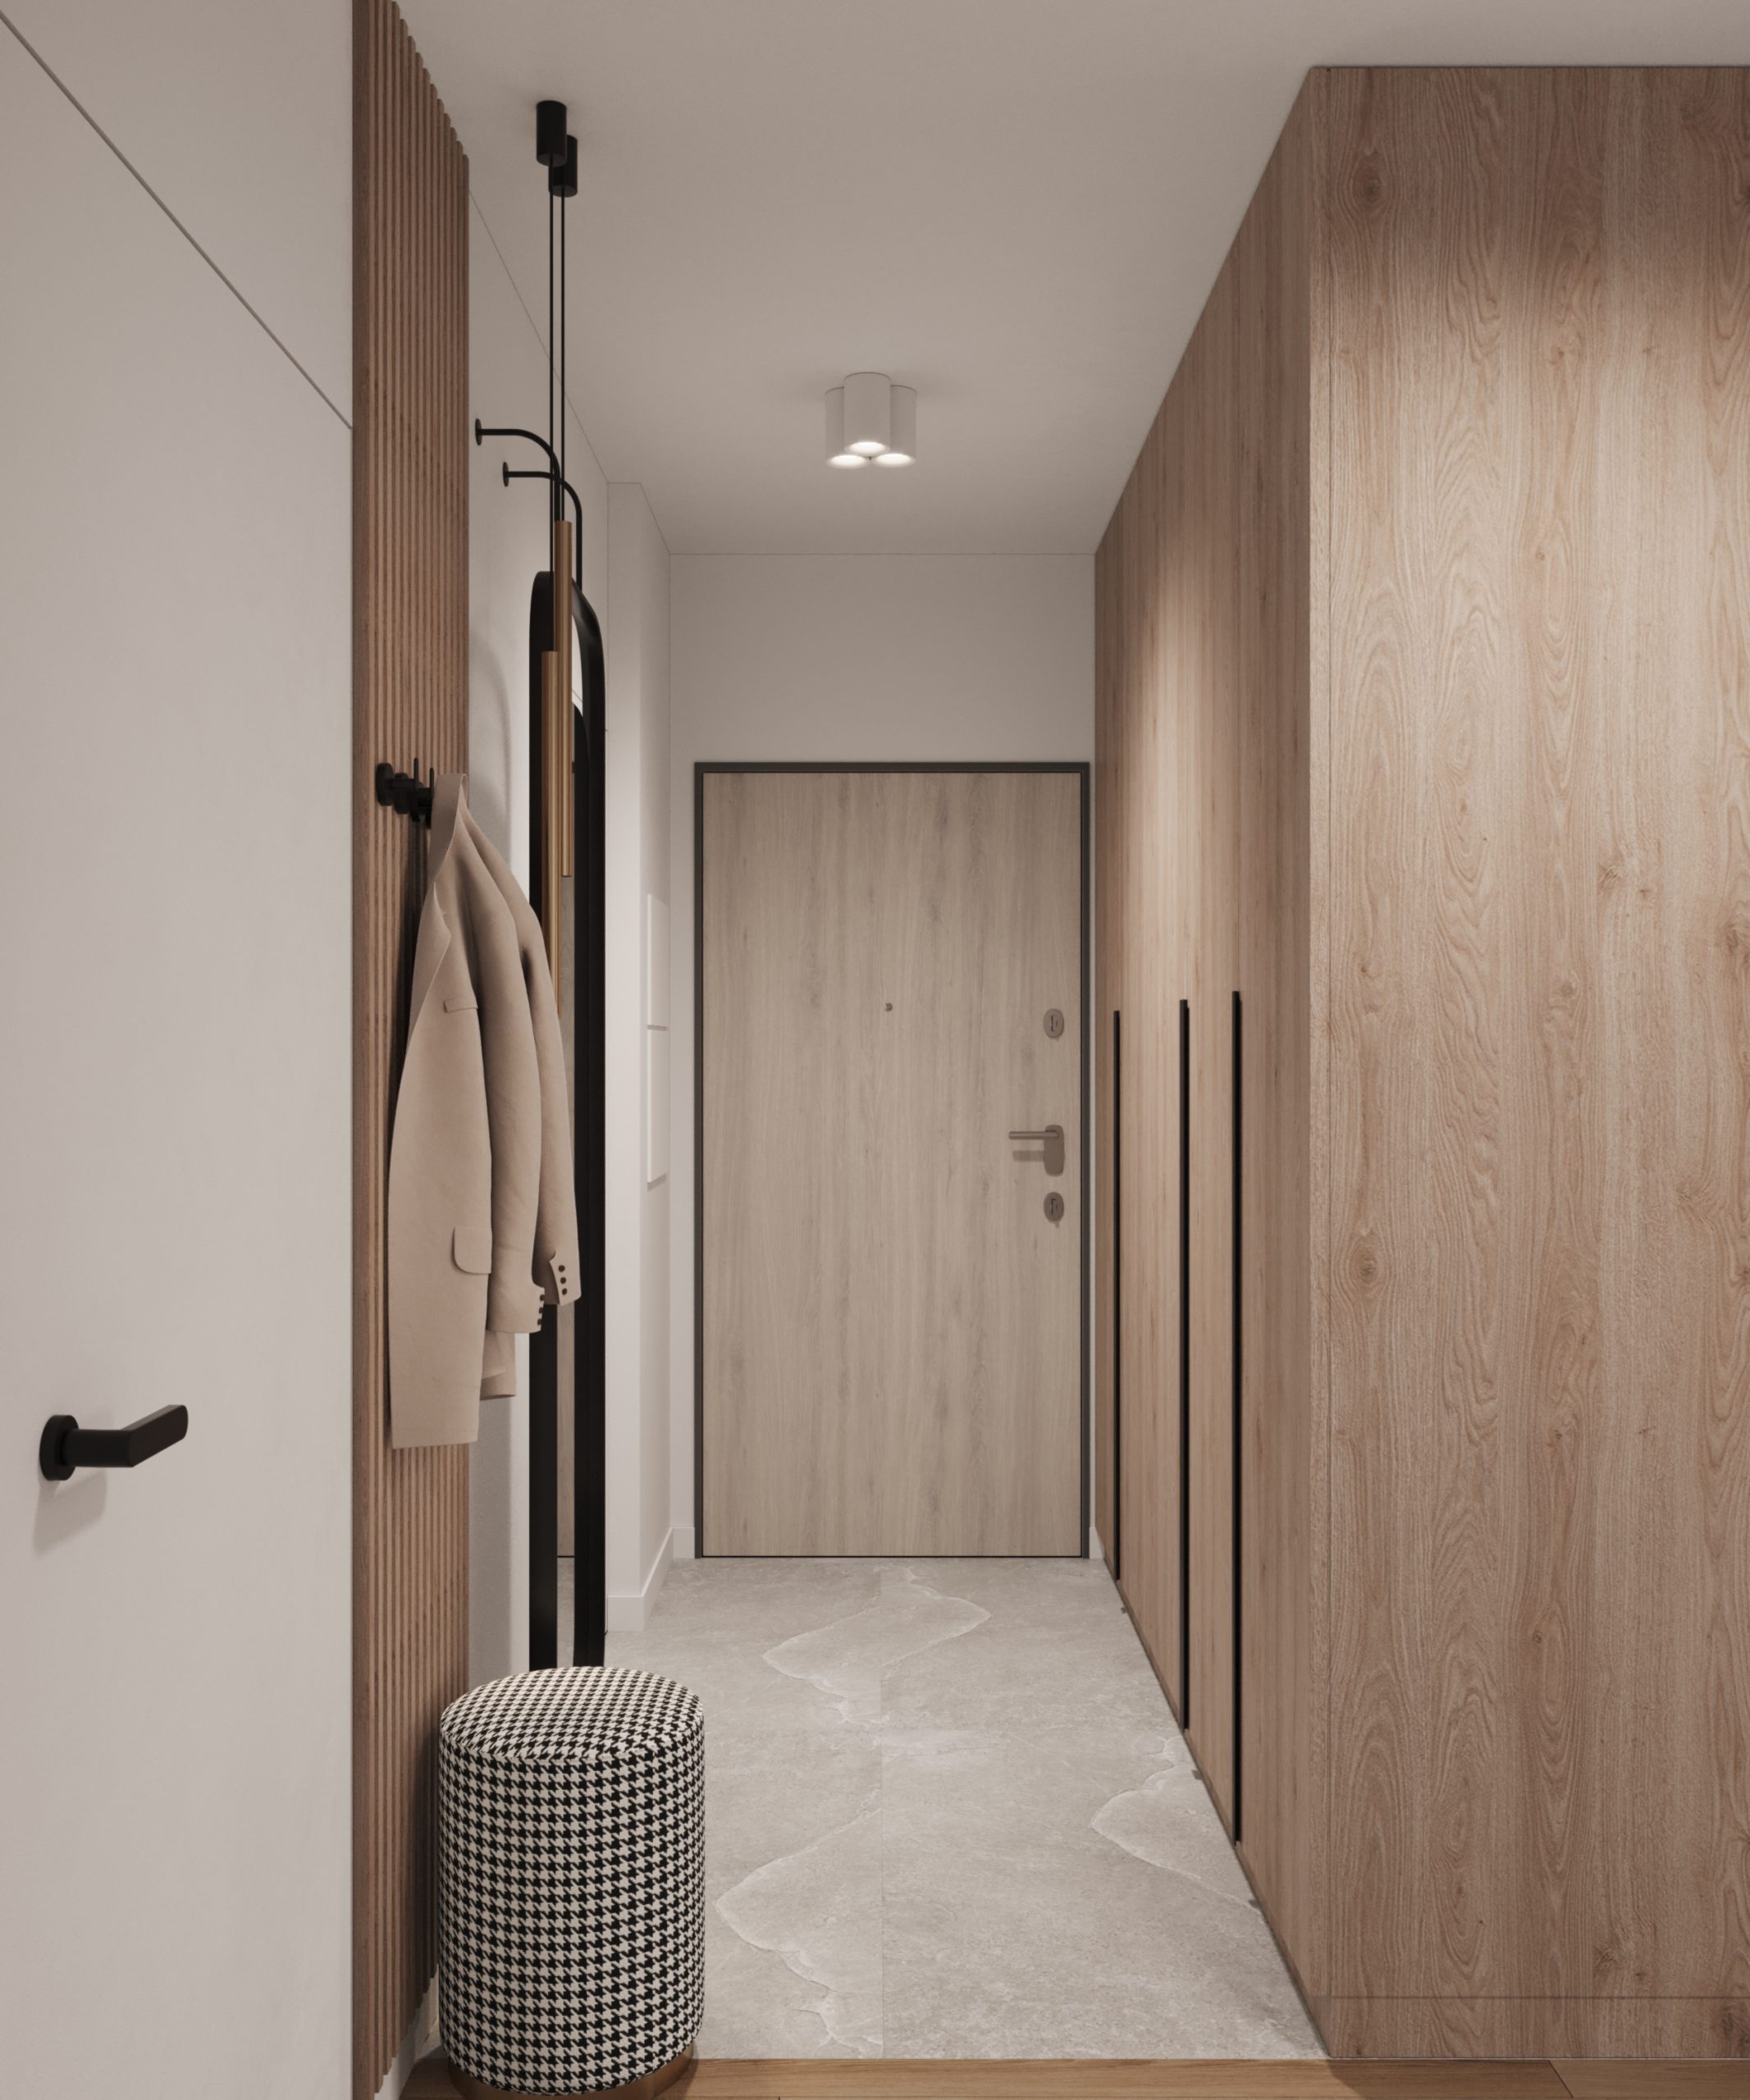 projektant wnętrz kraków - korytarz małego mieszkania